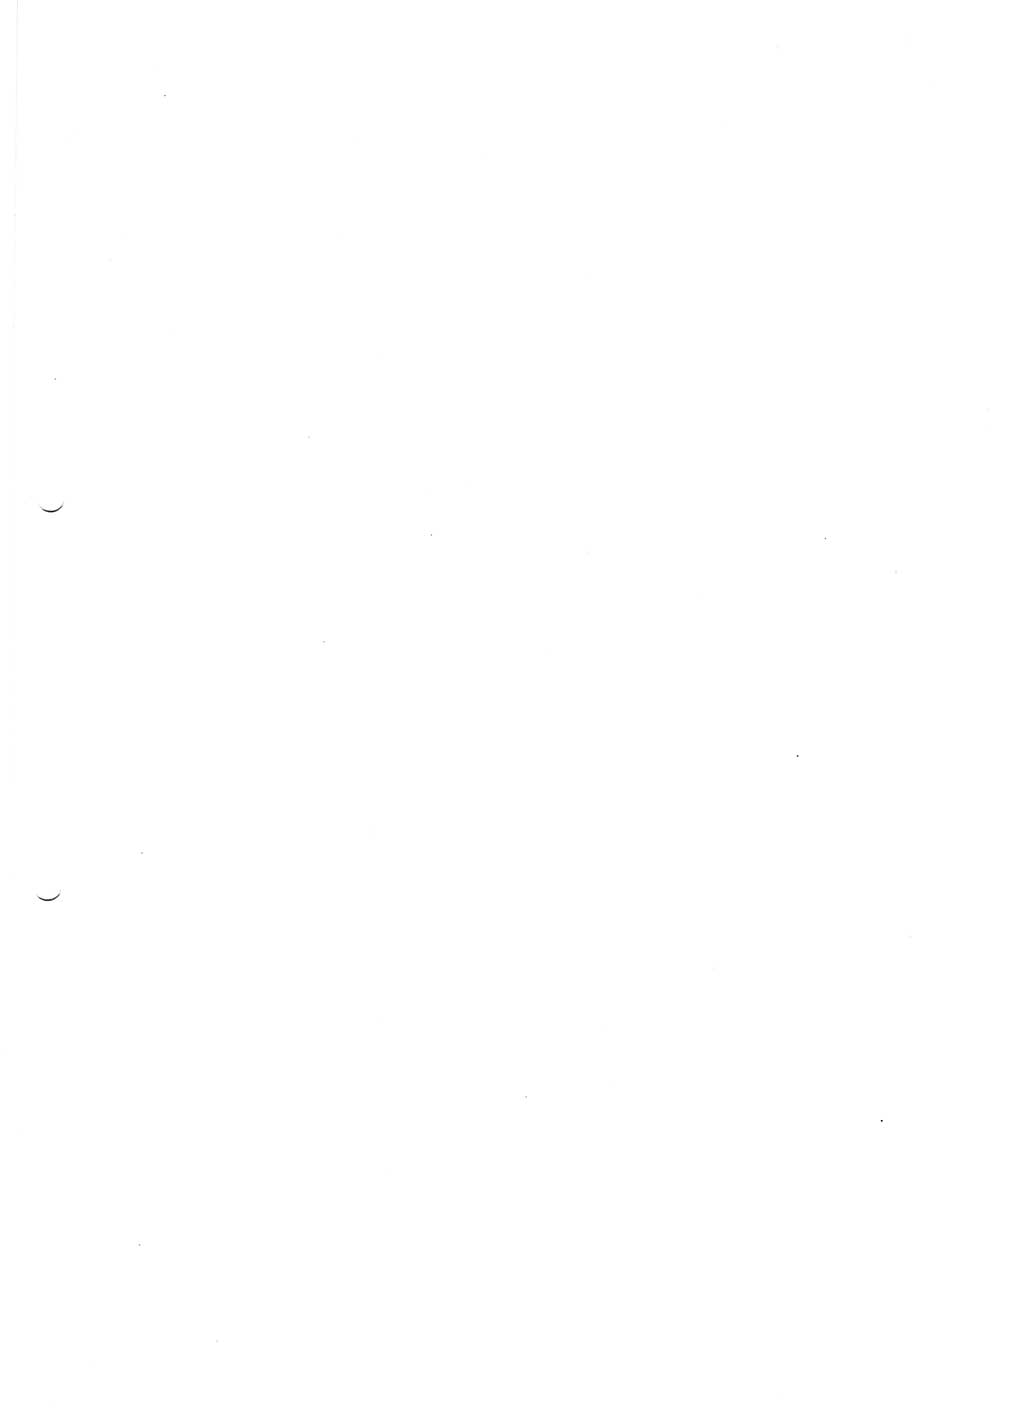 Tagungen der Volkskammer (VK) der Deutschen Demokratischen Republik (DDR), 10. Wahlperiode 1990, Seite 63 (VK. DDR 10. WP. 1990, Prot. Tg. 1-38, 5.4.-2.10.1990, S. 63)